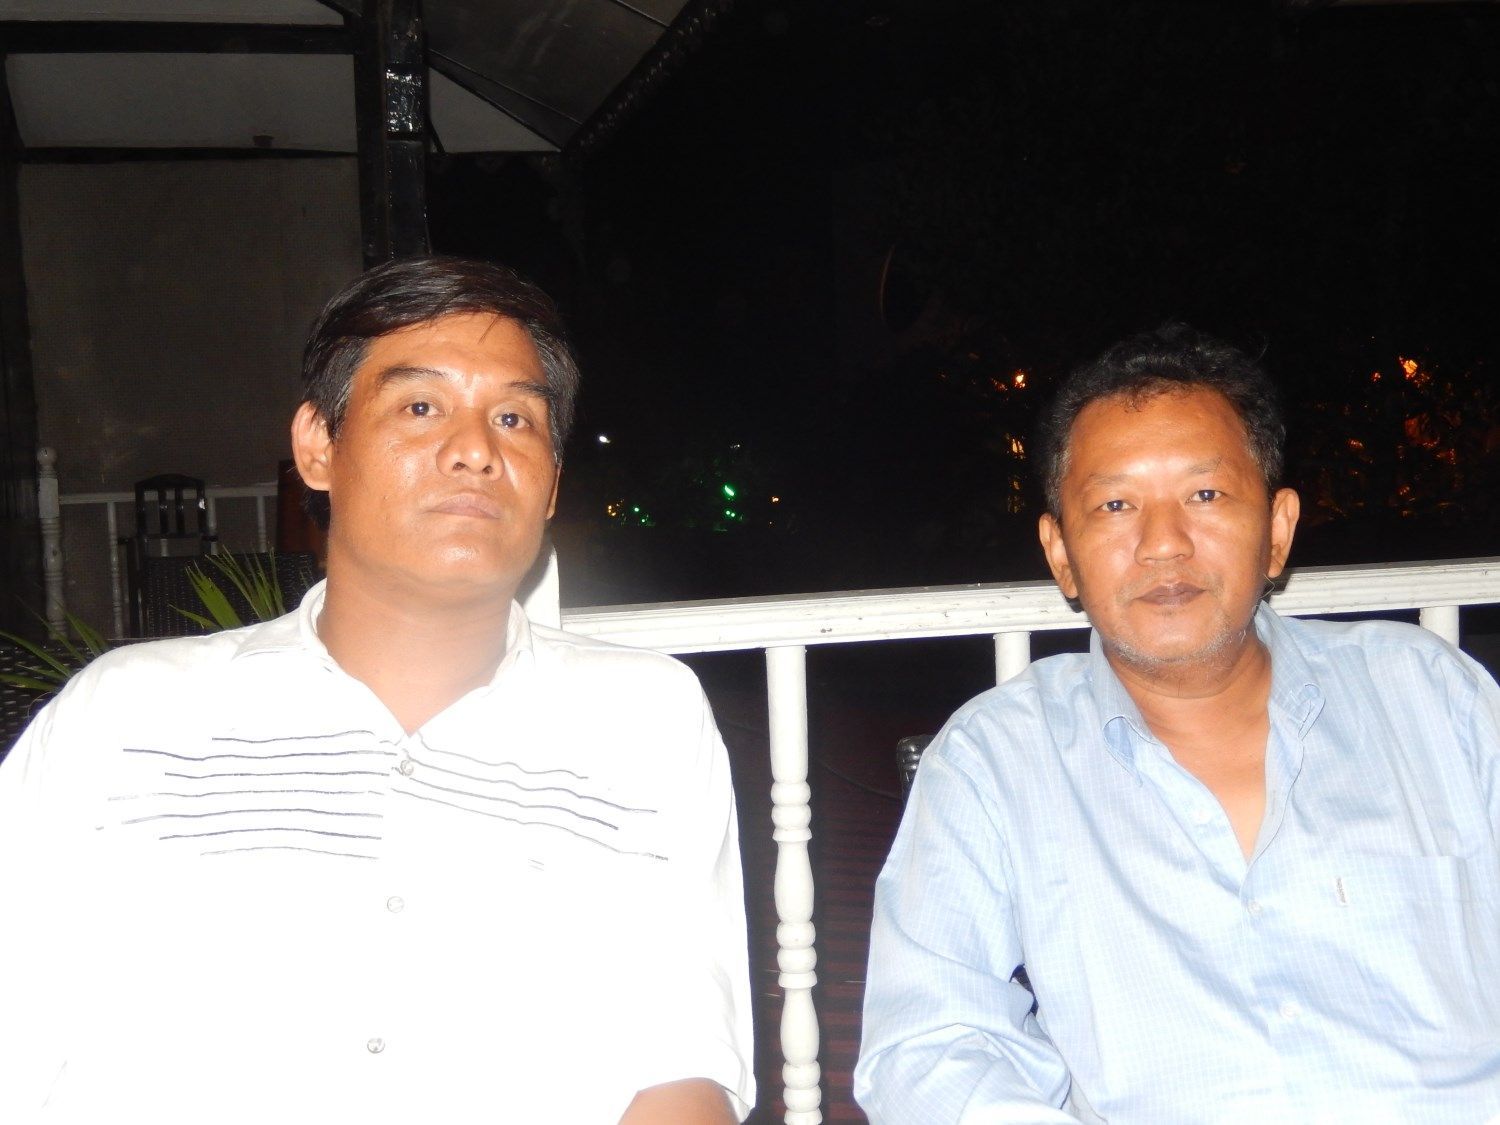 Martin Novák v Barmě - bývalí političtí vězni